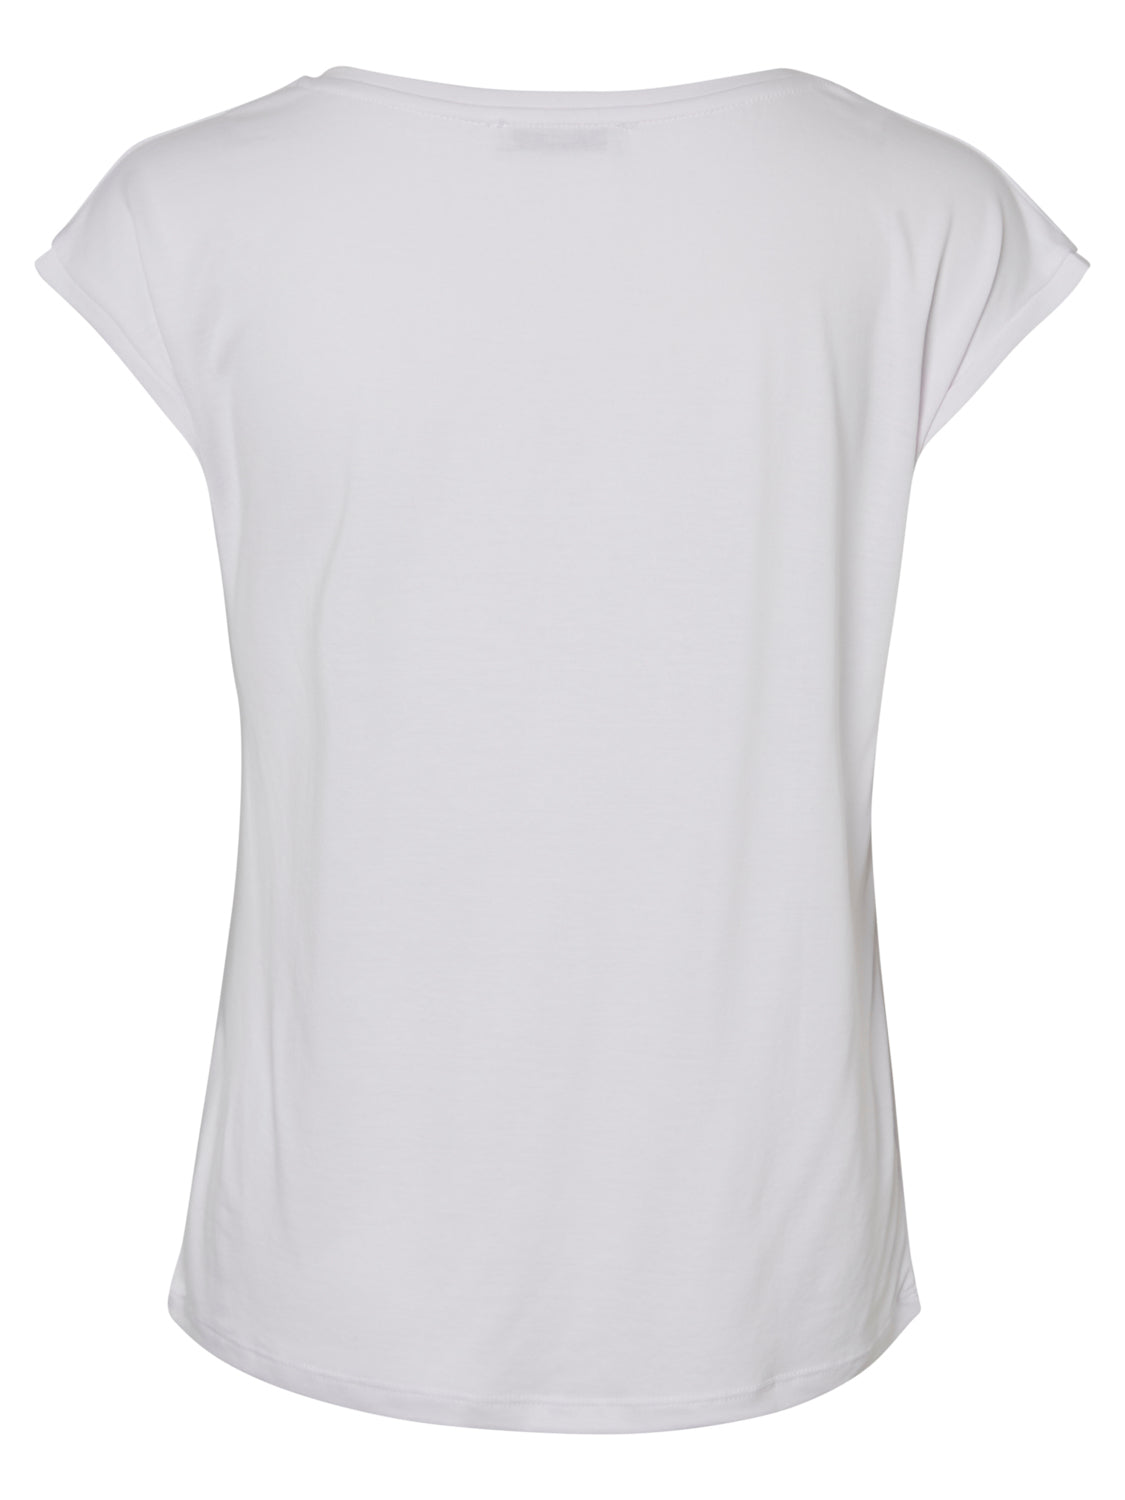 PCKAMALA T-Shirt - Bright White